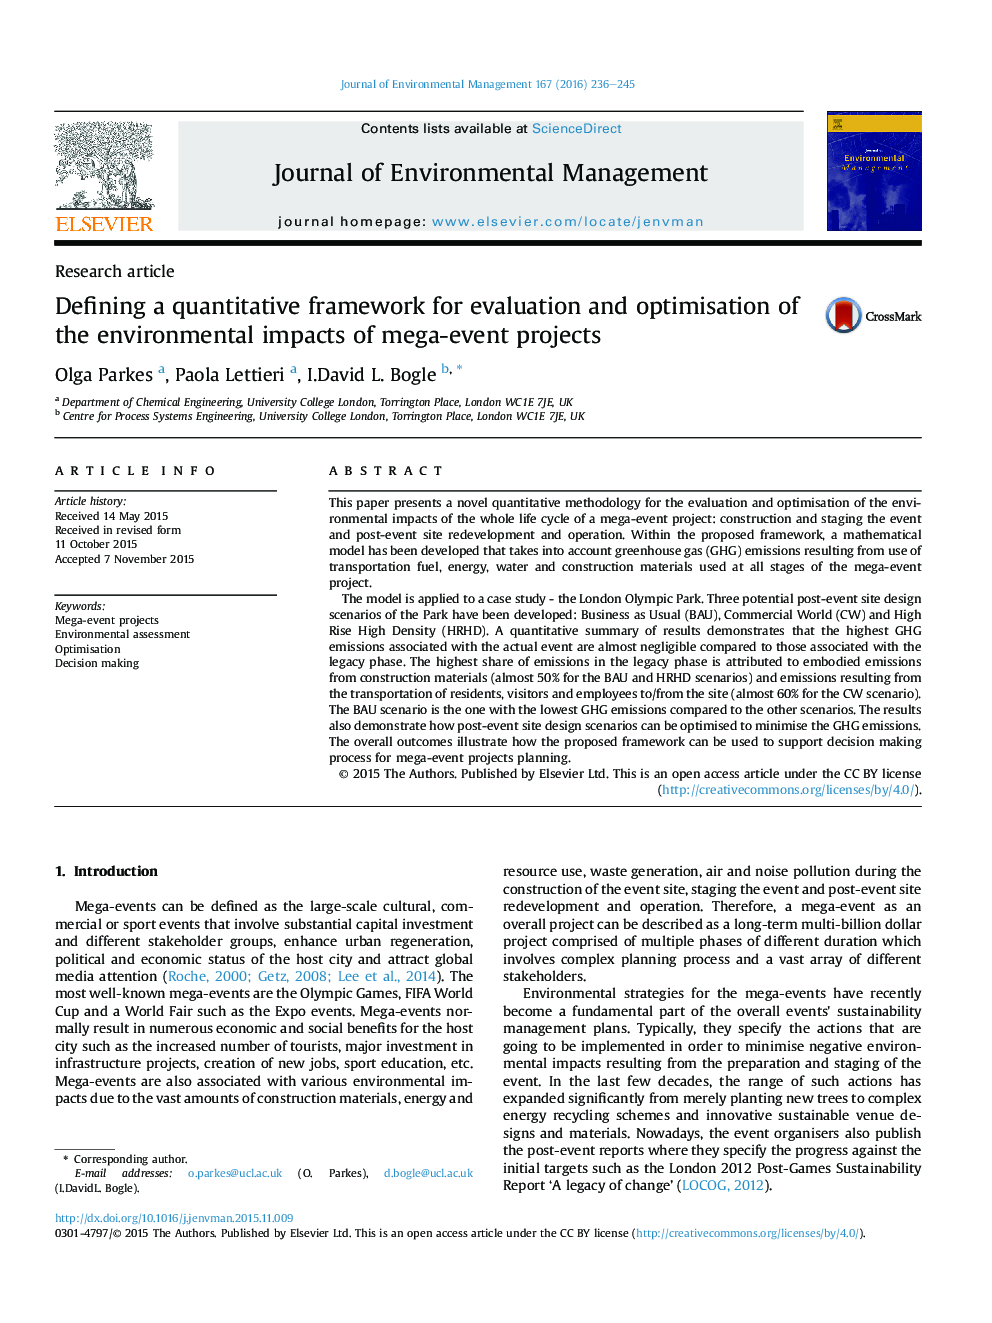 تعریف یک چارچوب کمی برای ارزیابی و بهینه سازی اثرات زیست محیطی پروژه های بزرگ رویداد 